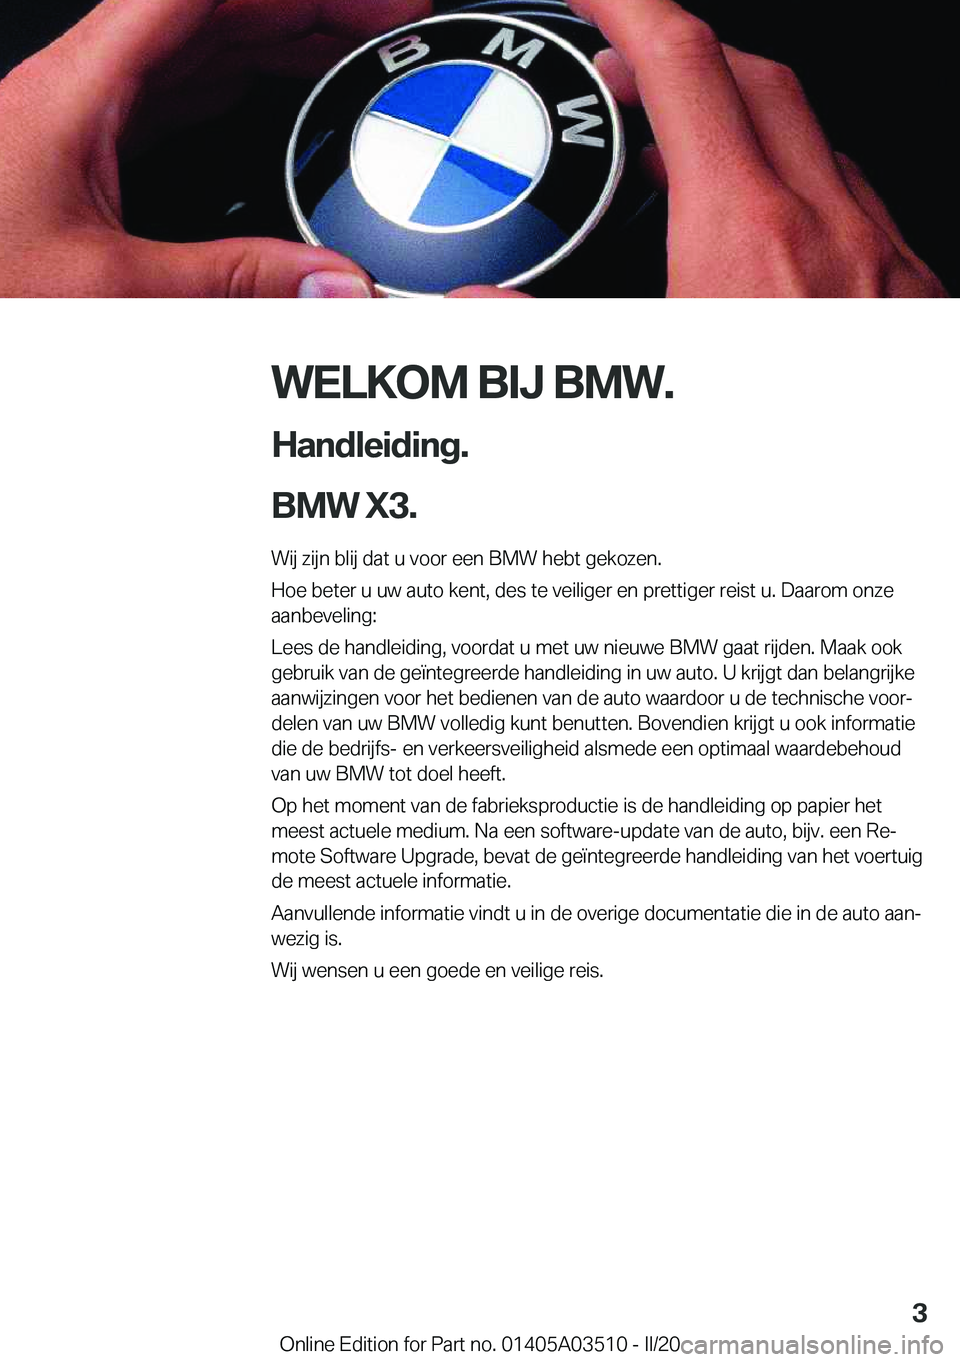 BMW X3 2020  Instructieboekjes (in Dutch) �W�E�L�K�O�M��B�I�J��B�M�W�.
�H�a�n�d�l�e�i�d�i�n�g�.
�B�M�W��X�3�. �W�i�j��z�i�j�n��b�l�i�j��d�a�t��u��v�o�o�r��e�e�n��B�M�W��h�e�b�t��g�e�k�o�z�e�n�.�H�o�e��b�e�t�e�r��u��u�w��a�u�t�